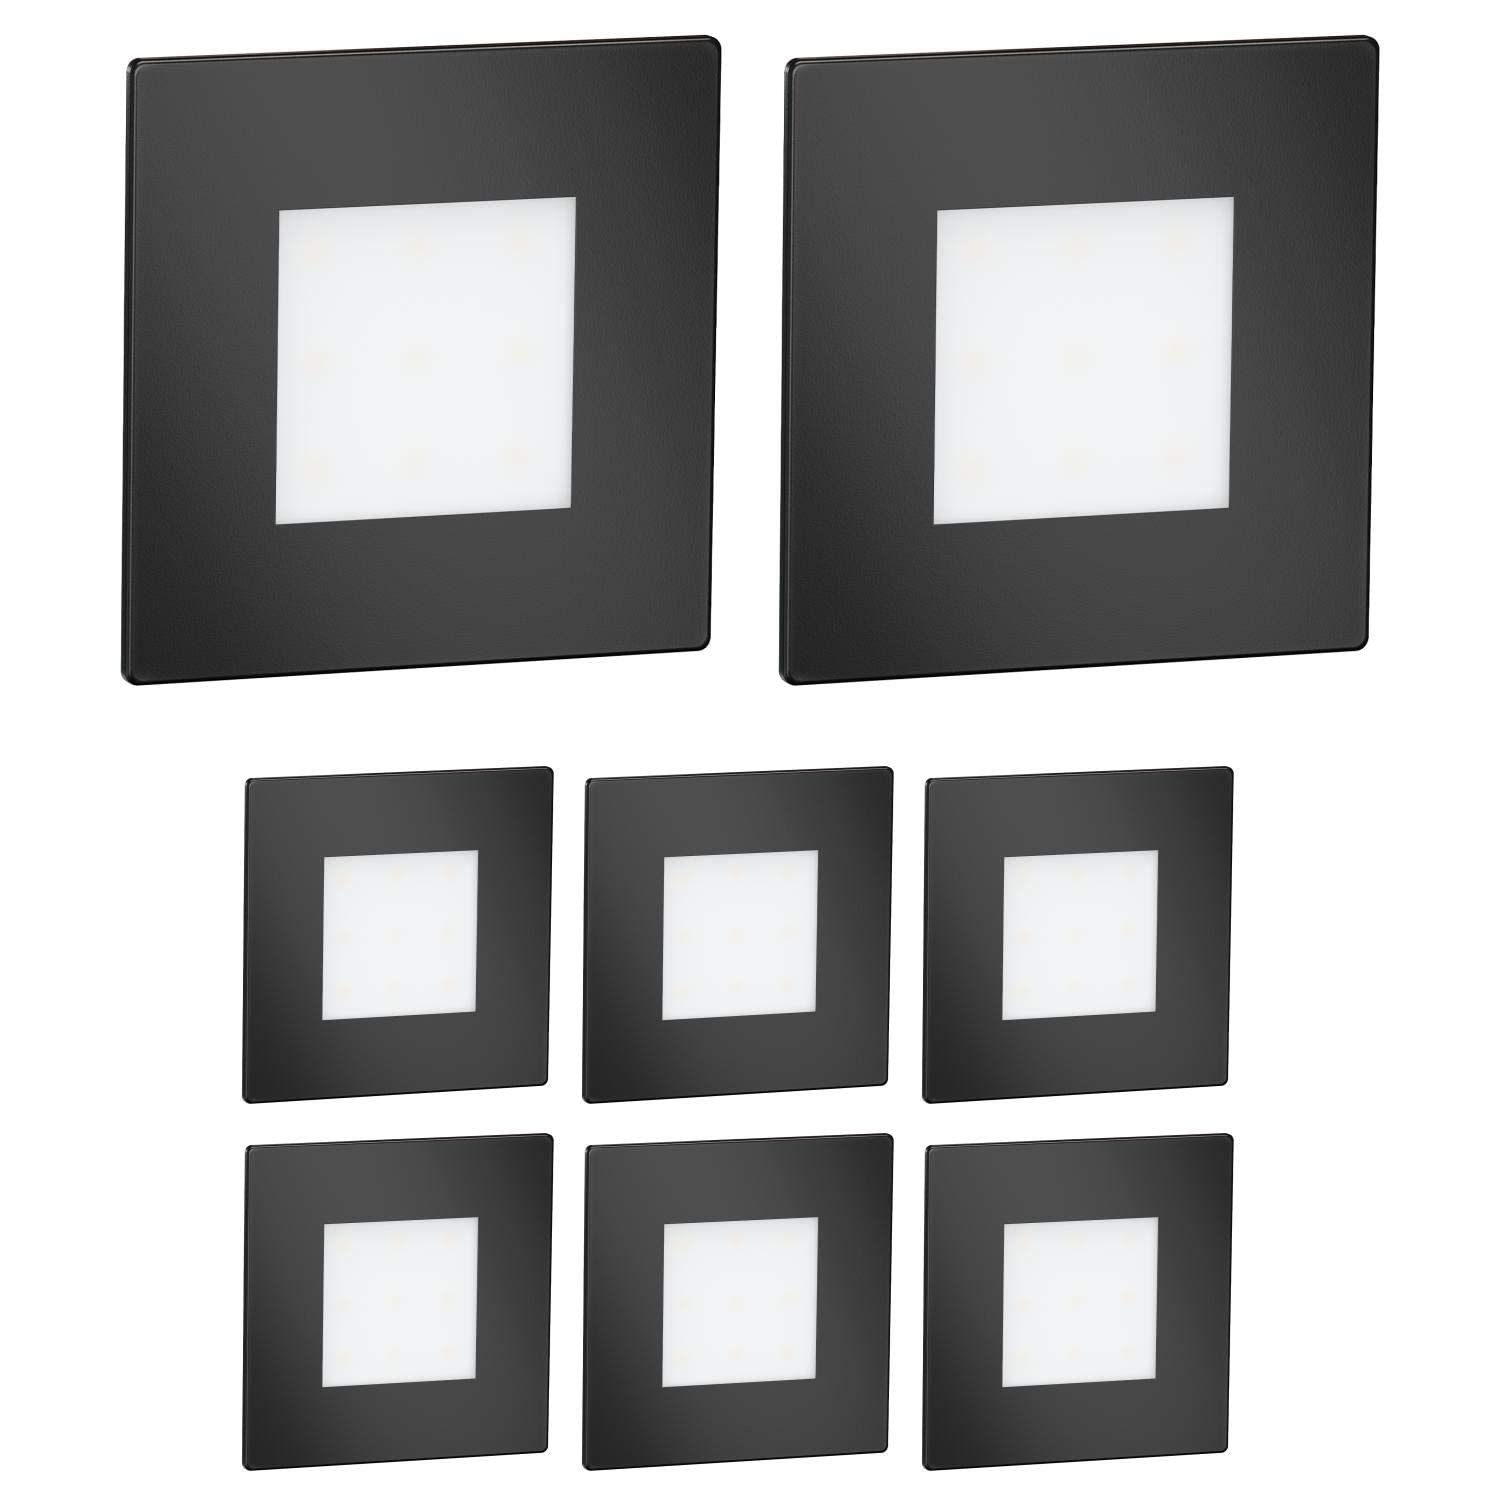 ledscom.de 8 Stück LED Treppenlicht/Wandeinbauleuchte FEX für innen und außen, eckig, schwarz, 85 x 85mm, warmweiß